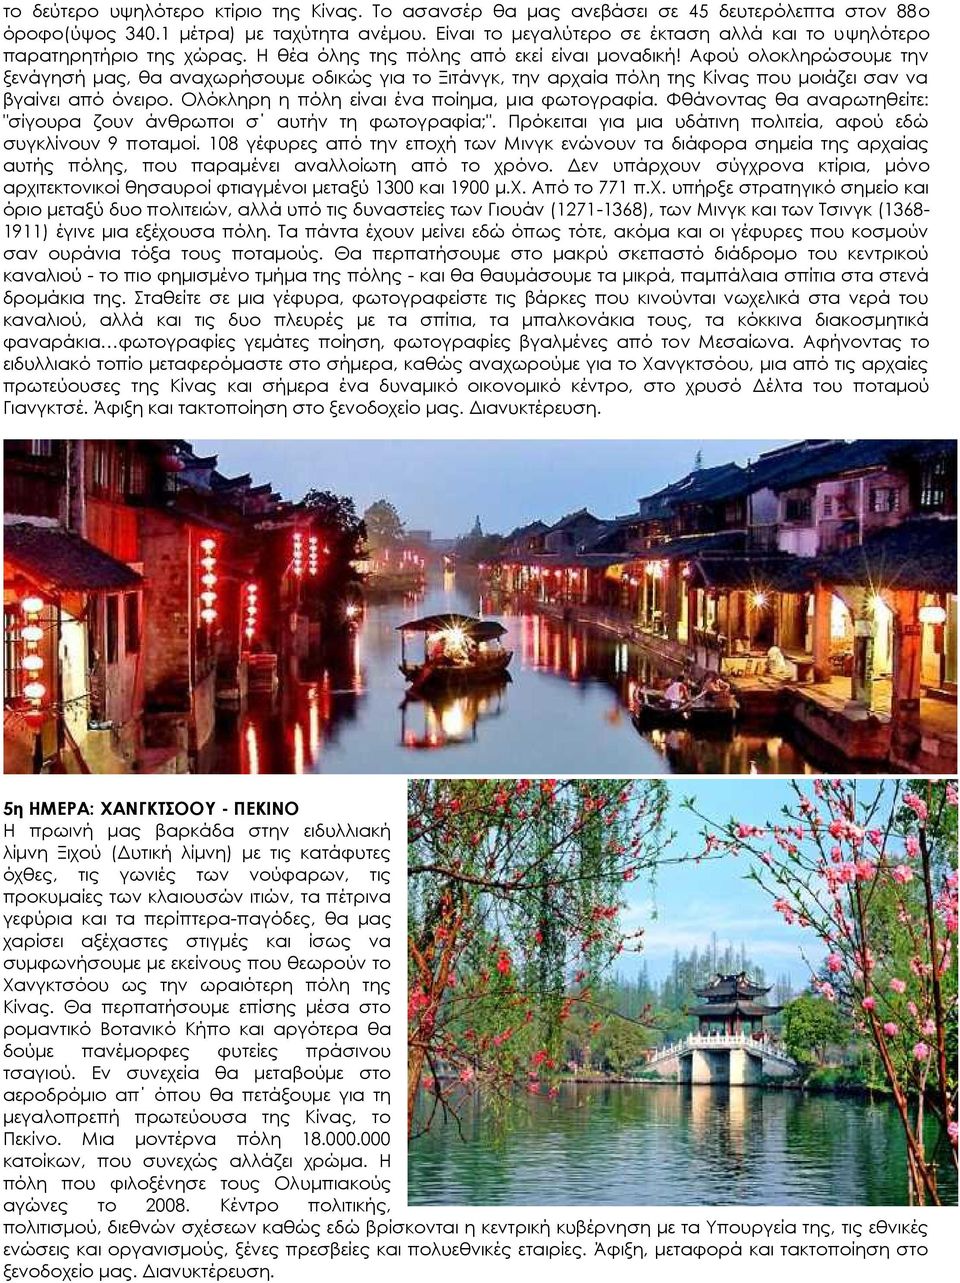 Αφού ολοκληρώσουμε την ξενάγησή μας, θα αναχωρήσουμε οδικώς για το Ξιτάνγκ, την αρχαία πόλη της Κίνας που μοιάζει σαν να βγαίνει από όνειρο. Ολόκληρη η πόλη είναι ένα ποίημα, μια φωτογραφία.